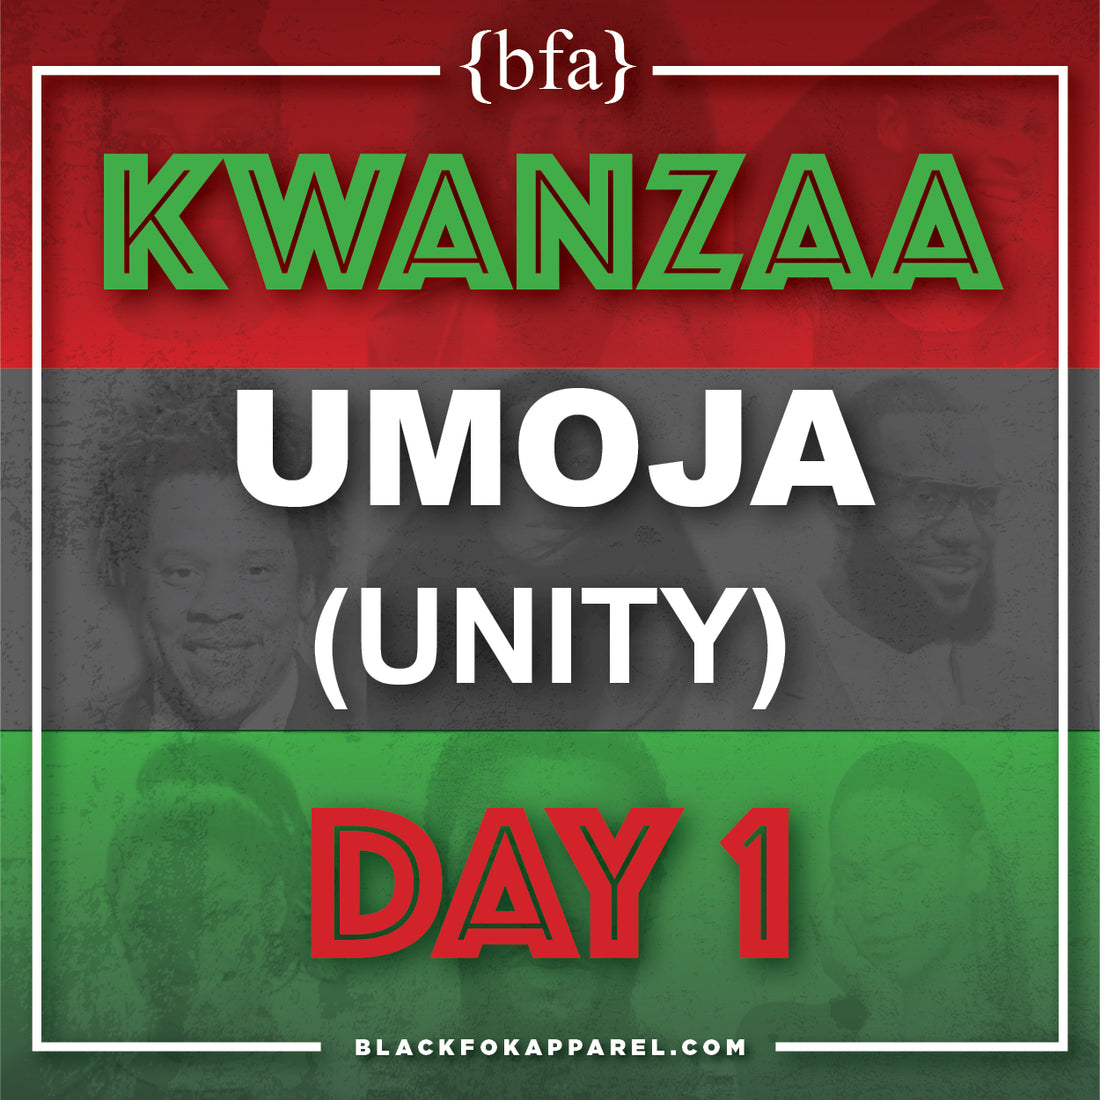 Happy Kwanzaa - Umoja